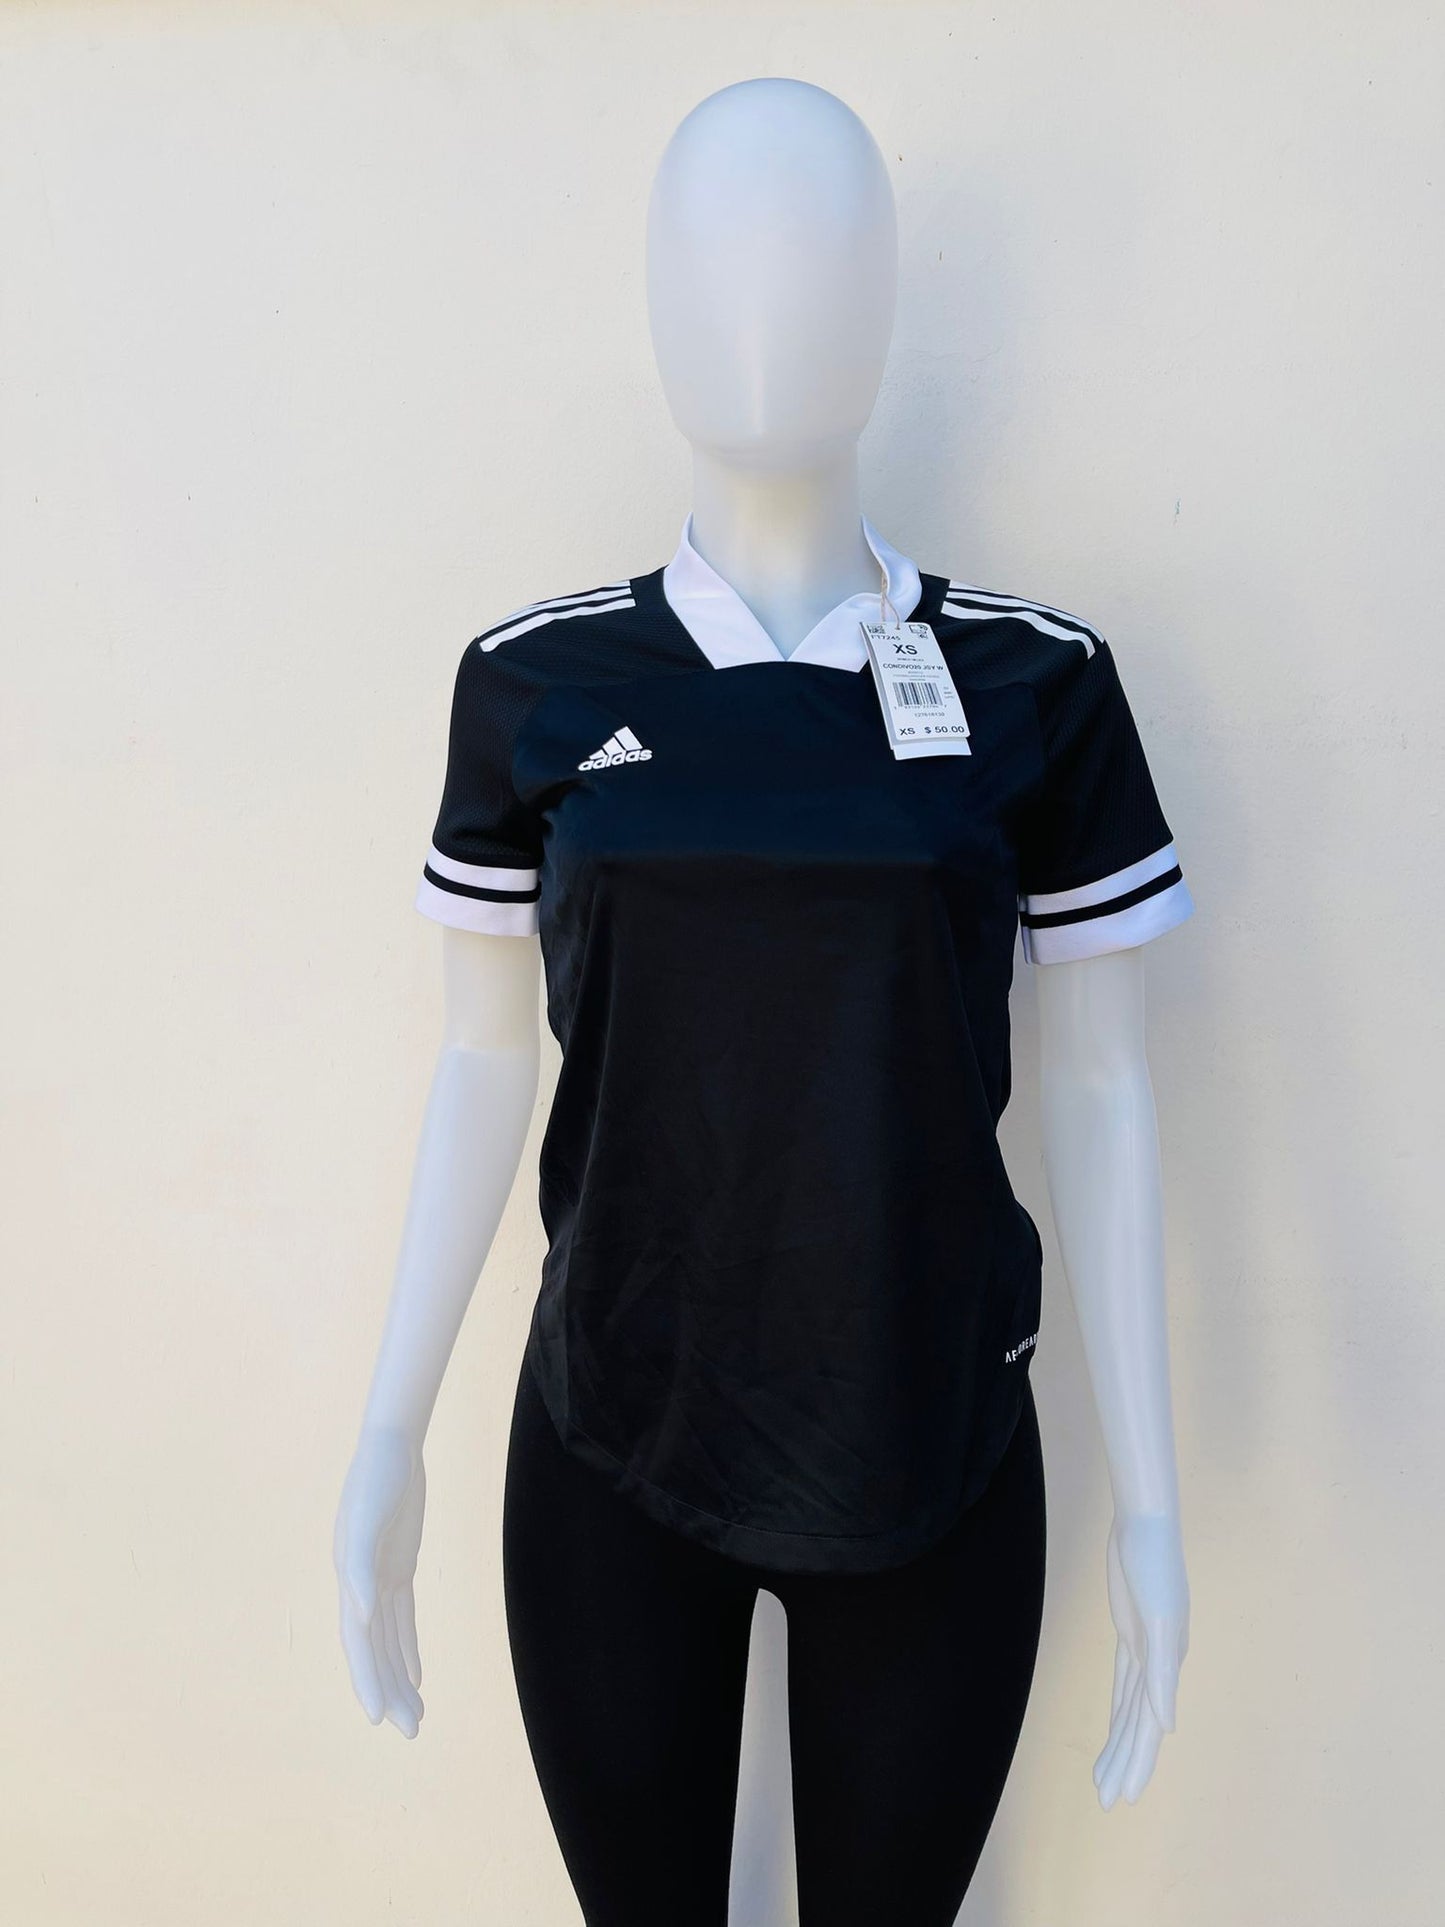 T-shirt Adidas original de color negro con raya blancas de n las mangas cuello de color blanco diseño de logo y letra ADIDAS en color blanco al frente en tela deportiva